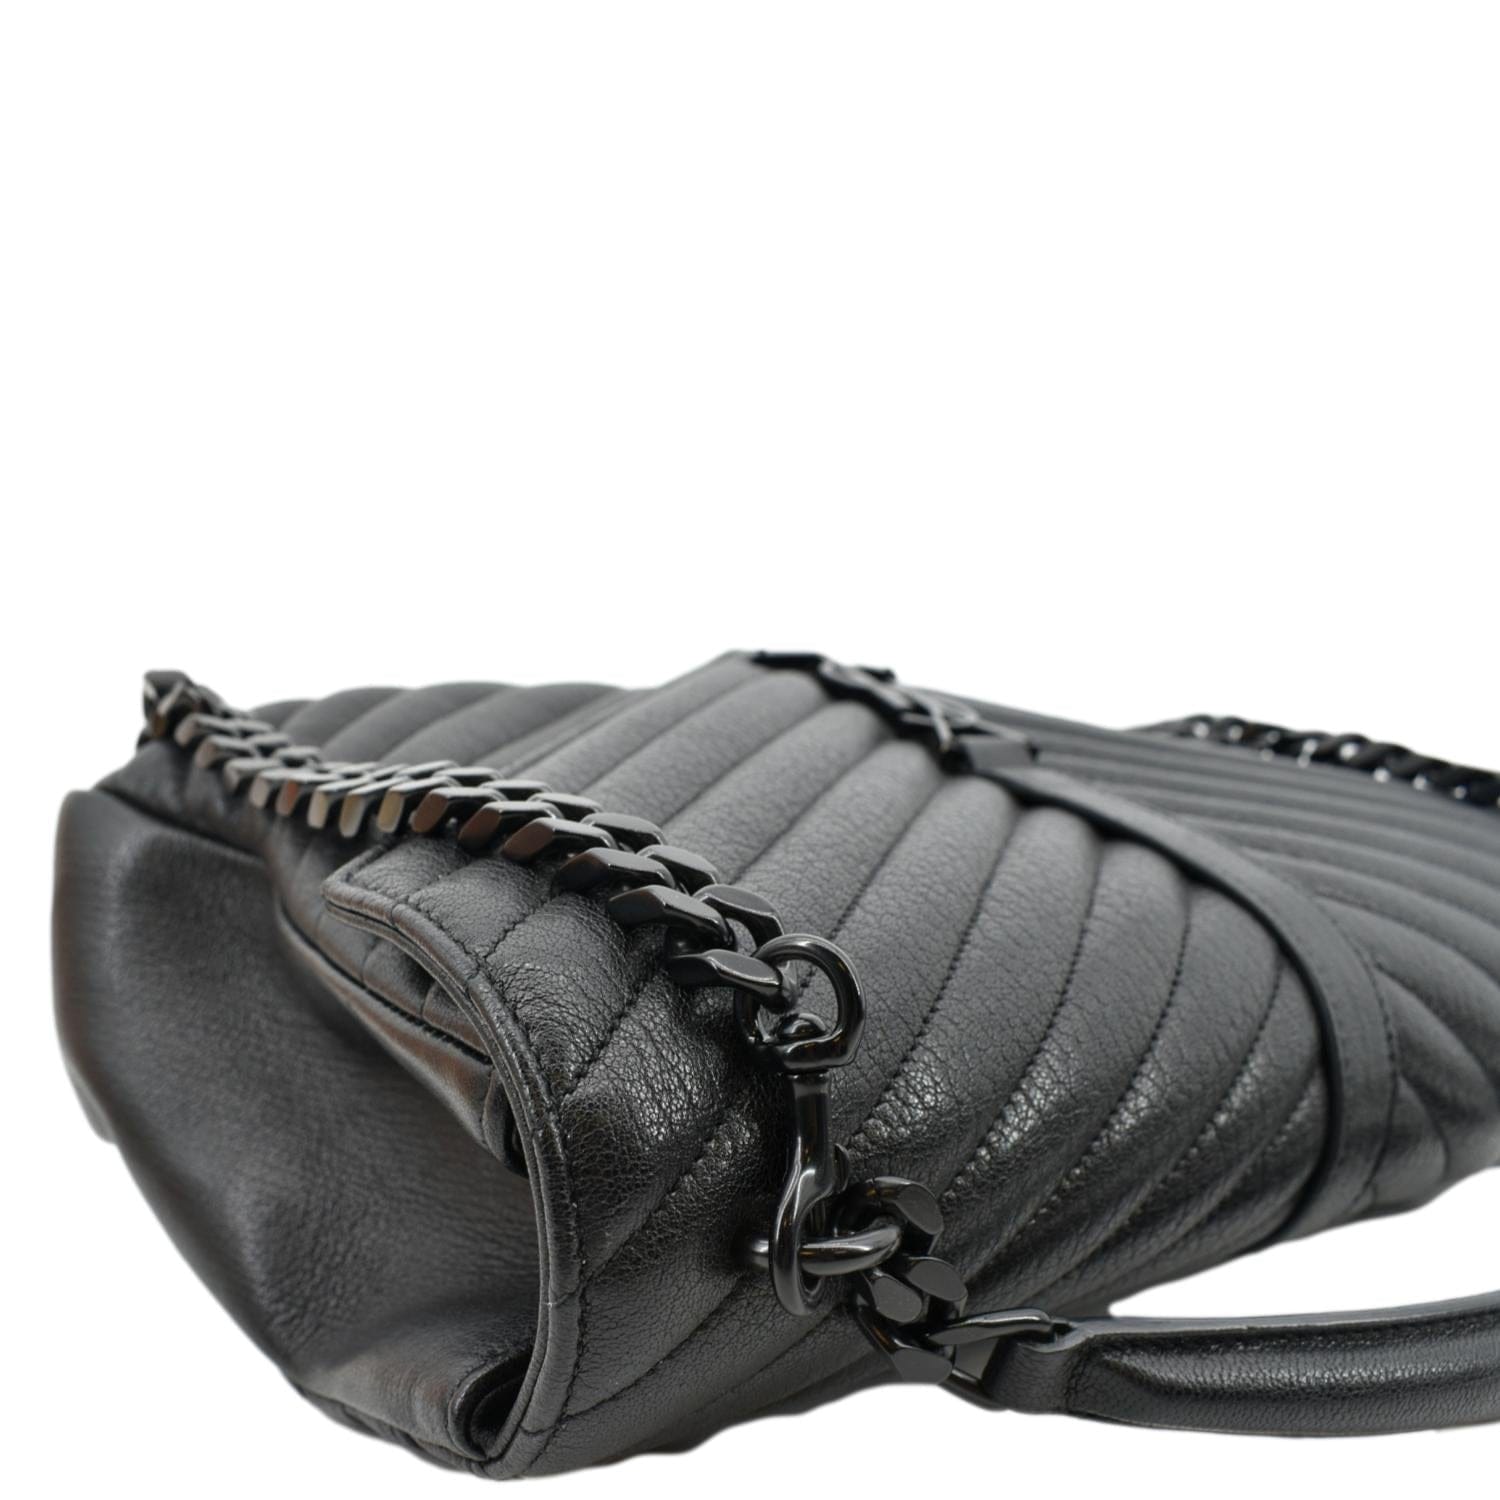 Saint Laurent Quilted Leather College Large Shoulder Bag in Black